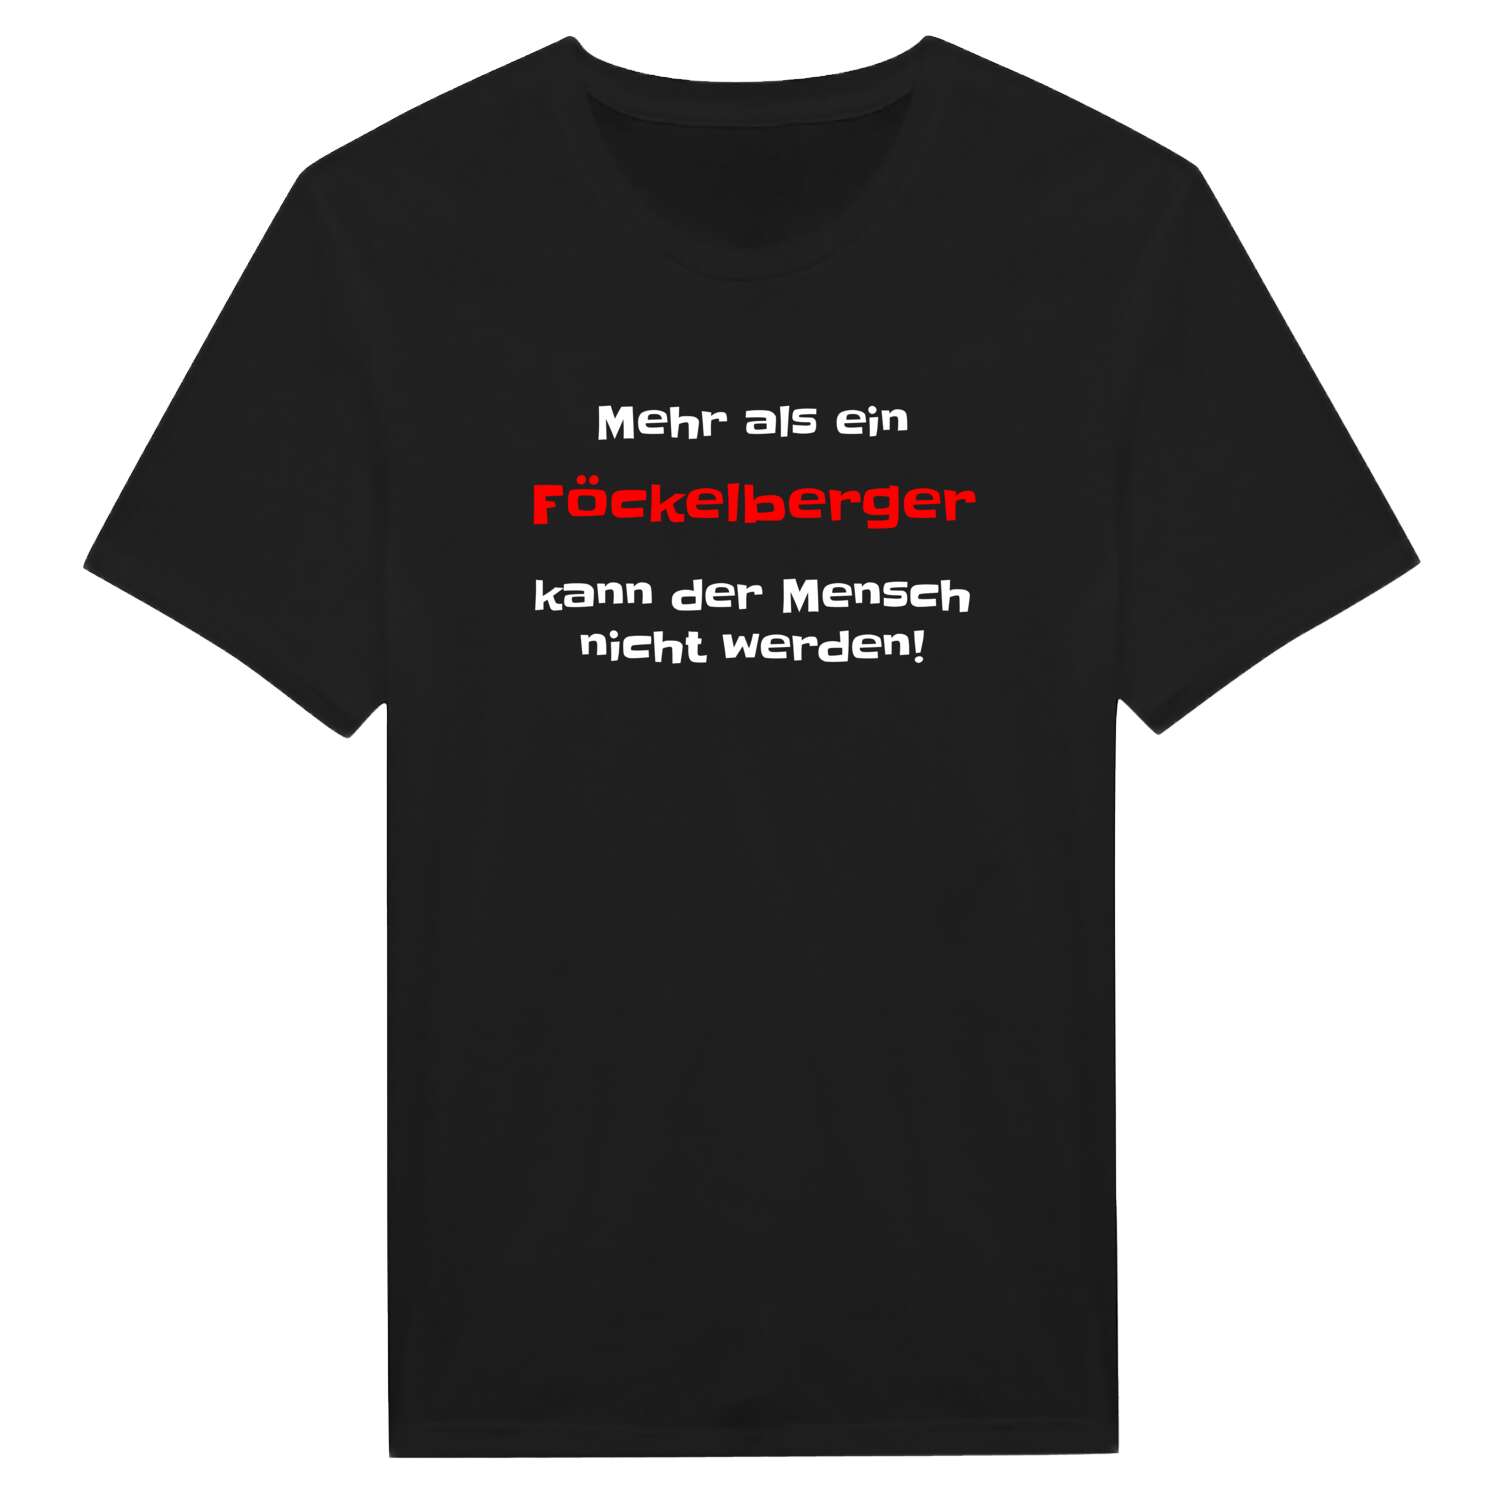 Föckelberg T-Shirt »Mehr als ein«